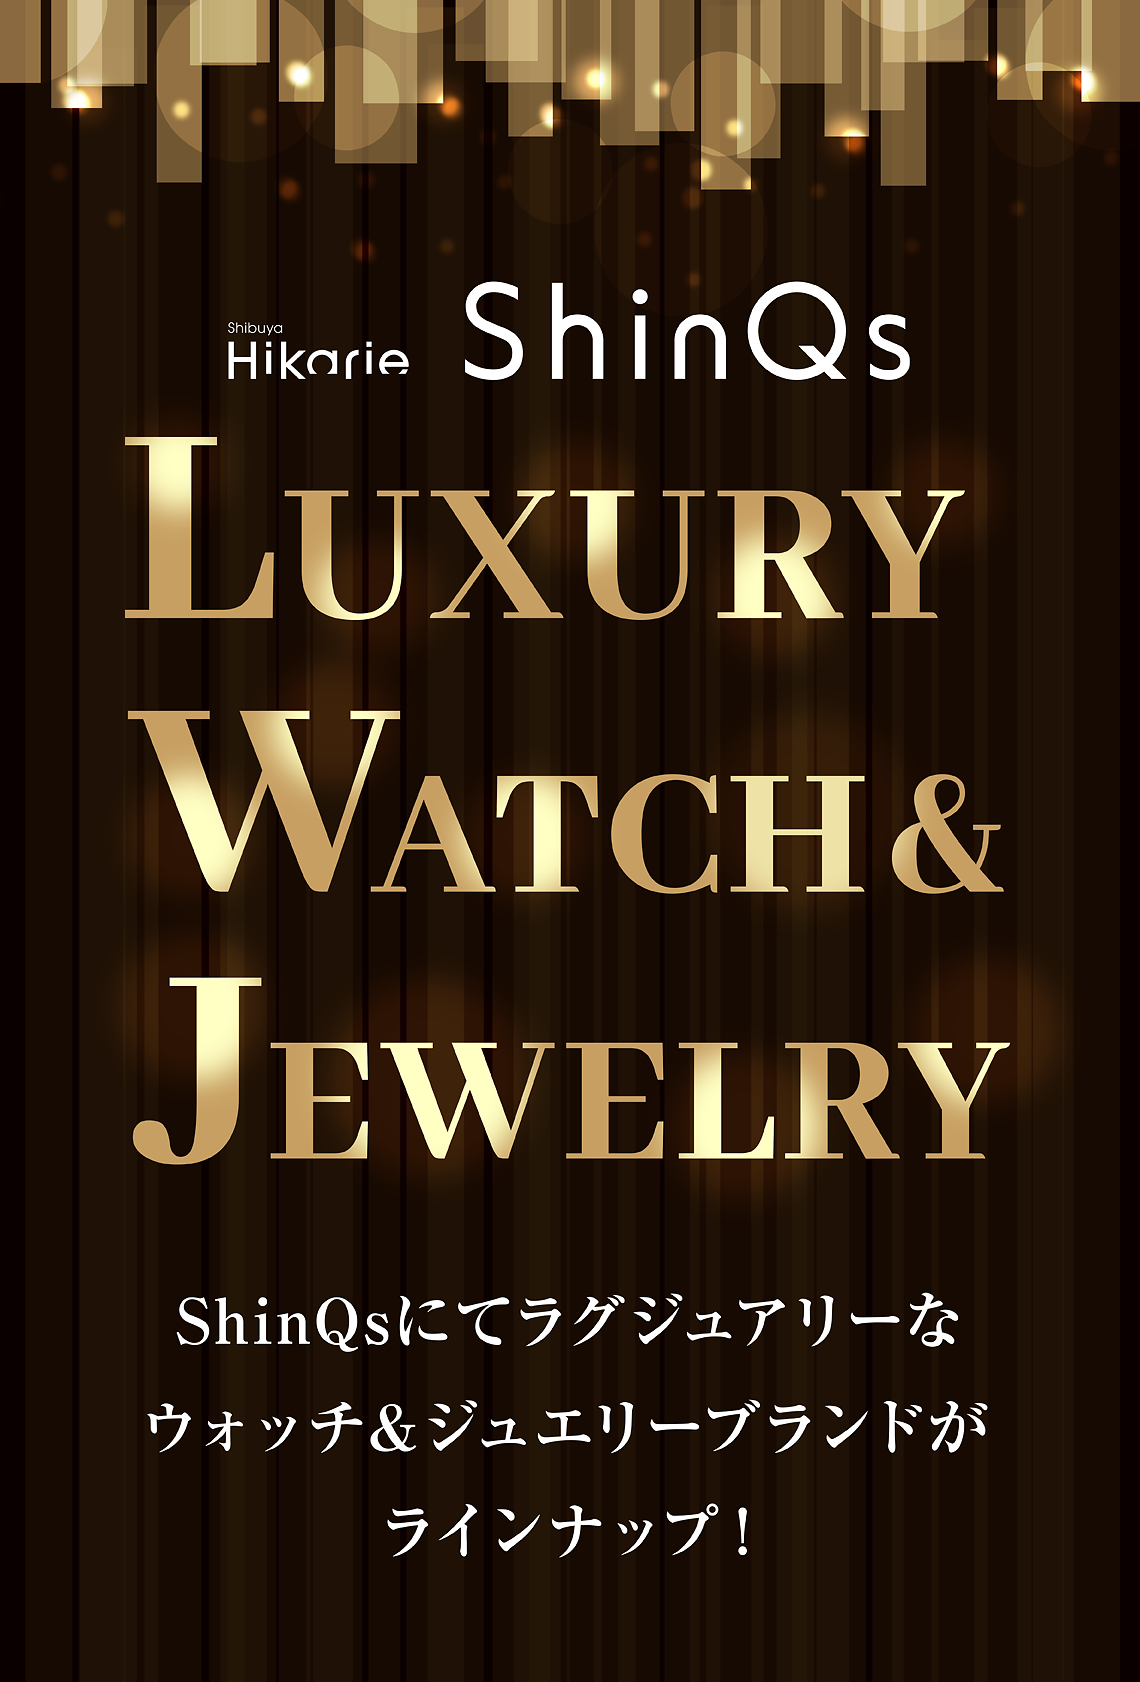 在LUXURY WATCH&JEWELRY ShinQs作为奢侈的手表&珠宝品牌是陈列！